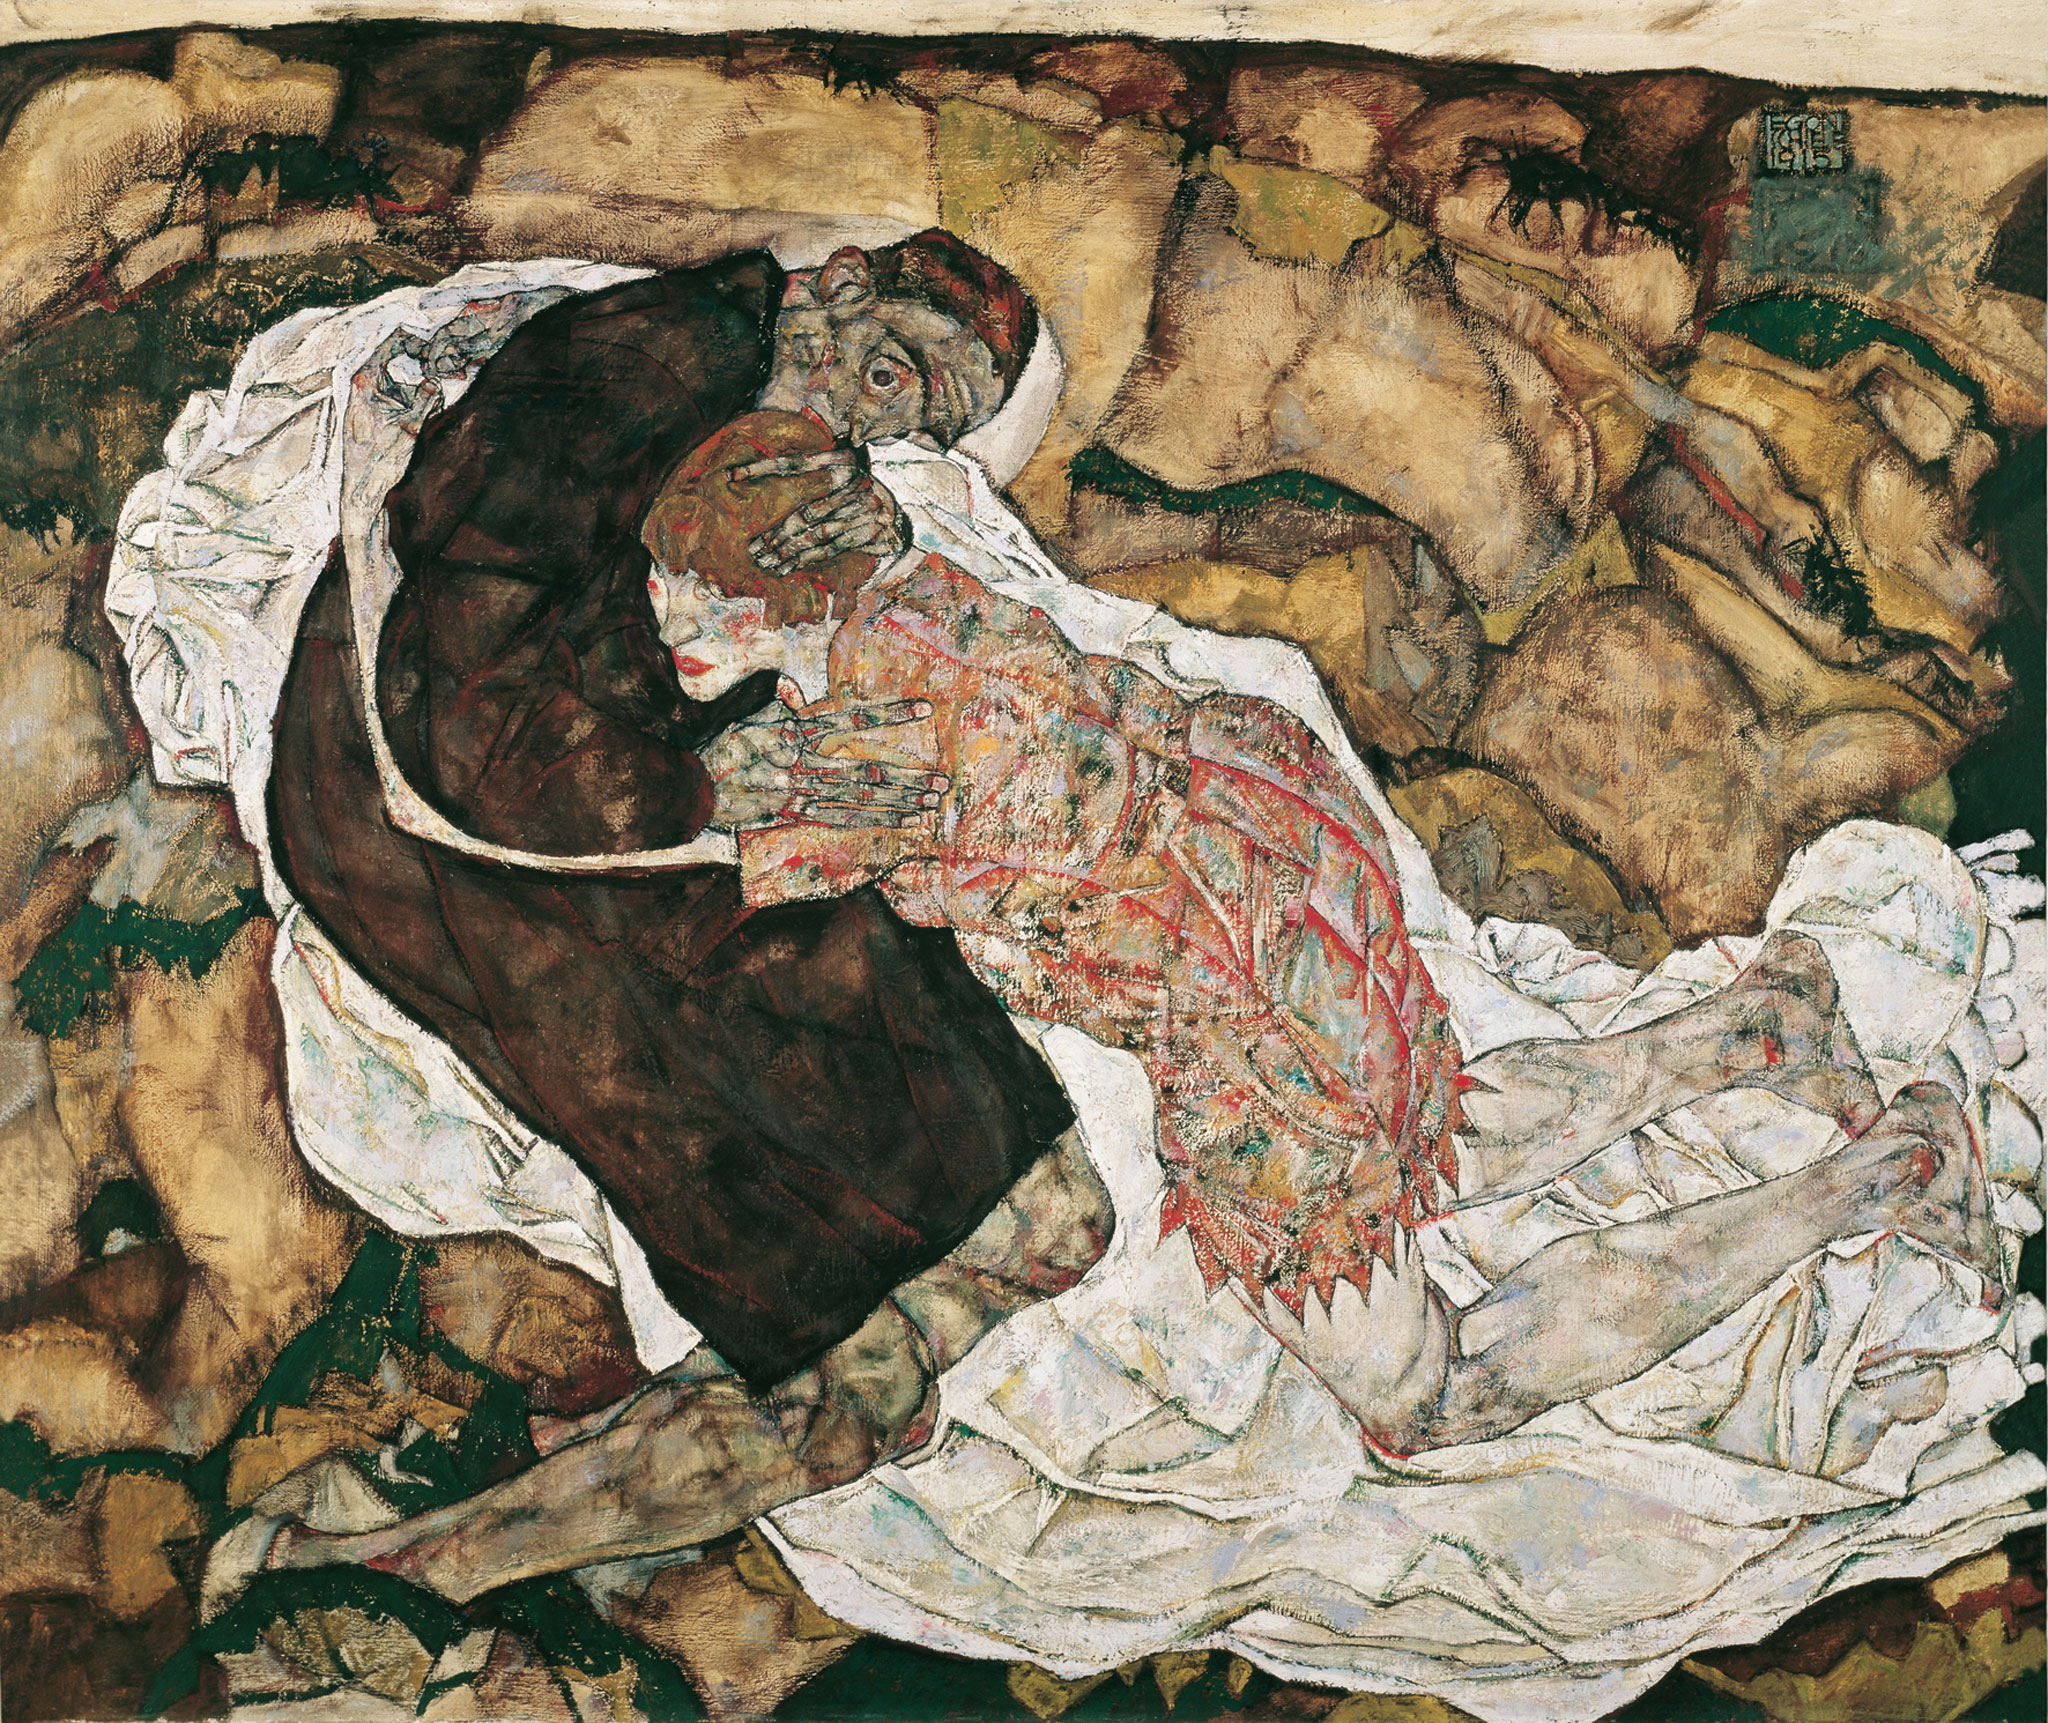 Smrt a dívka by Egon Schiele - 1915 - 89,5 x 125,5 cm 